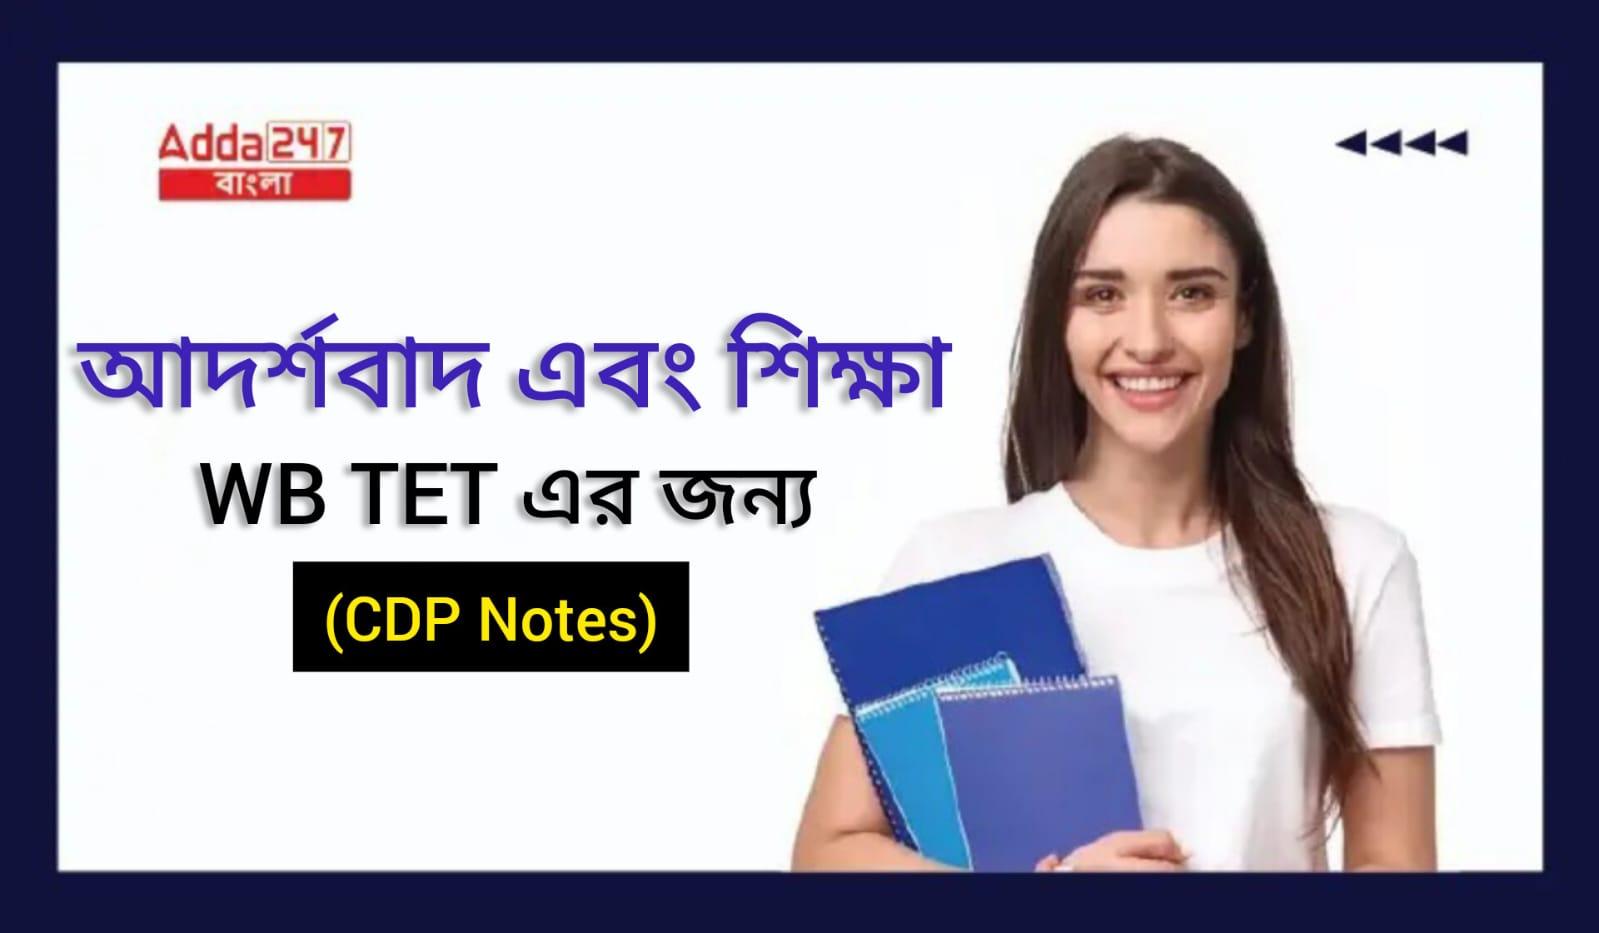 আদর্শবাদ এবং শিক্ষা, WB TET এর জন্য- (CDP Notes)